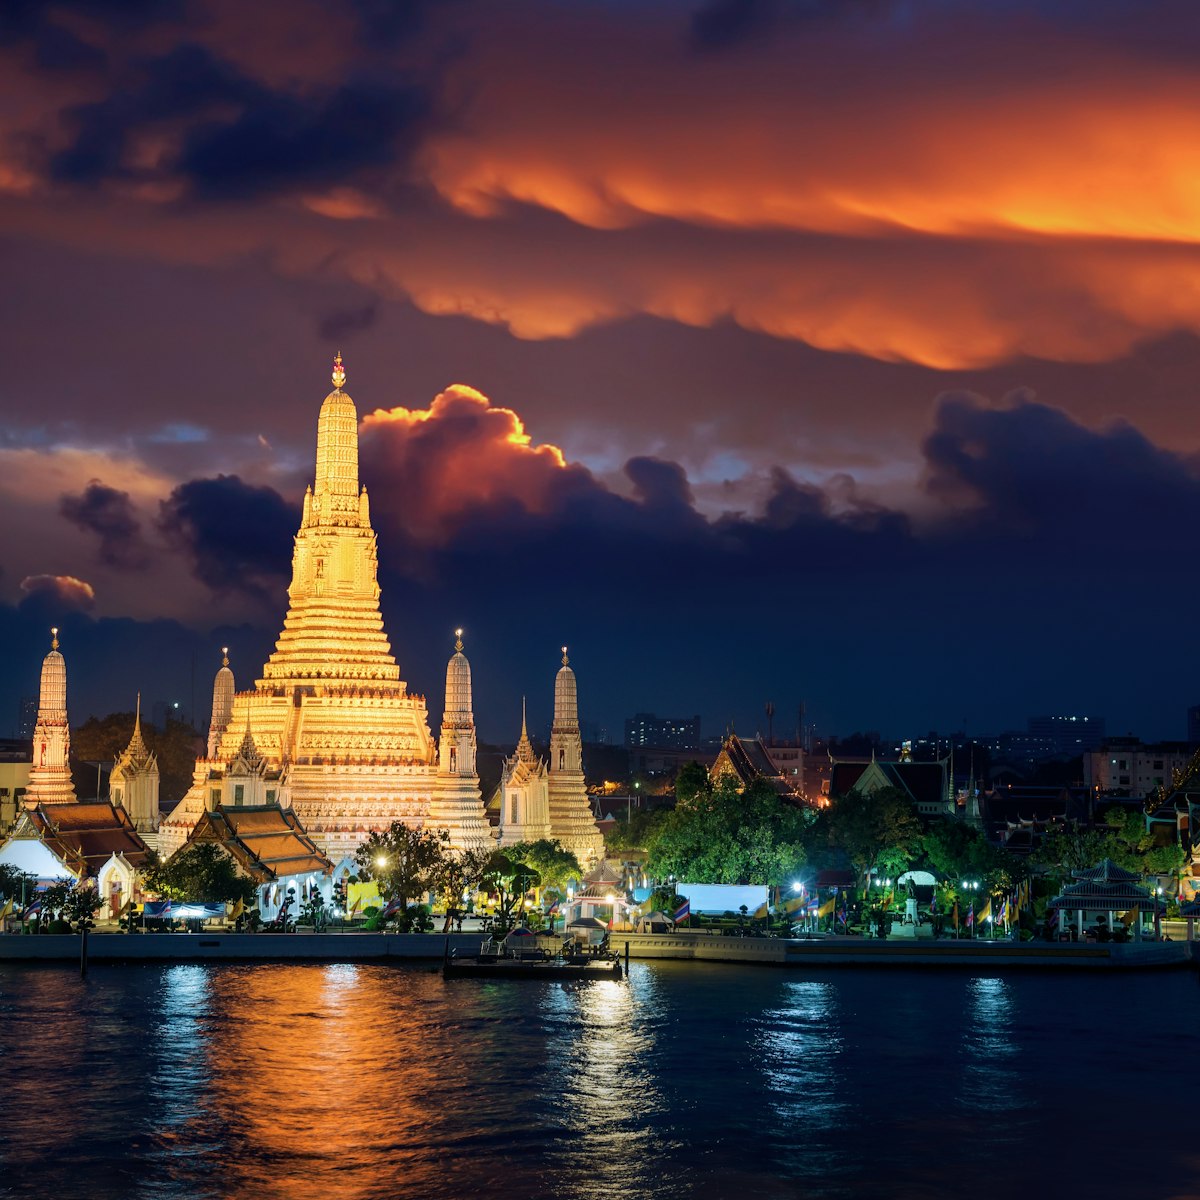 Wat Arun temple in Bangkok during sunset.